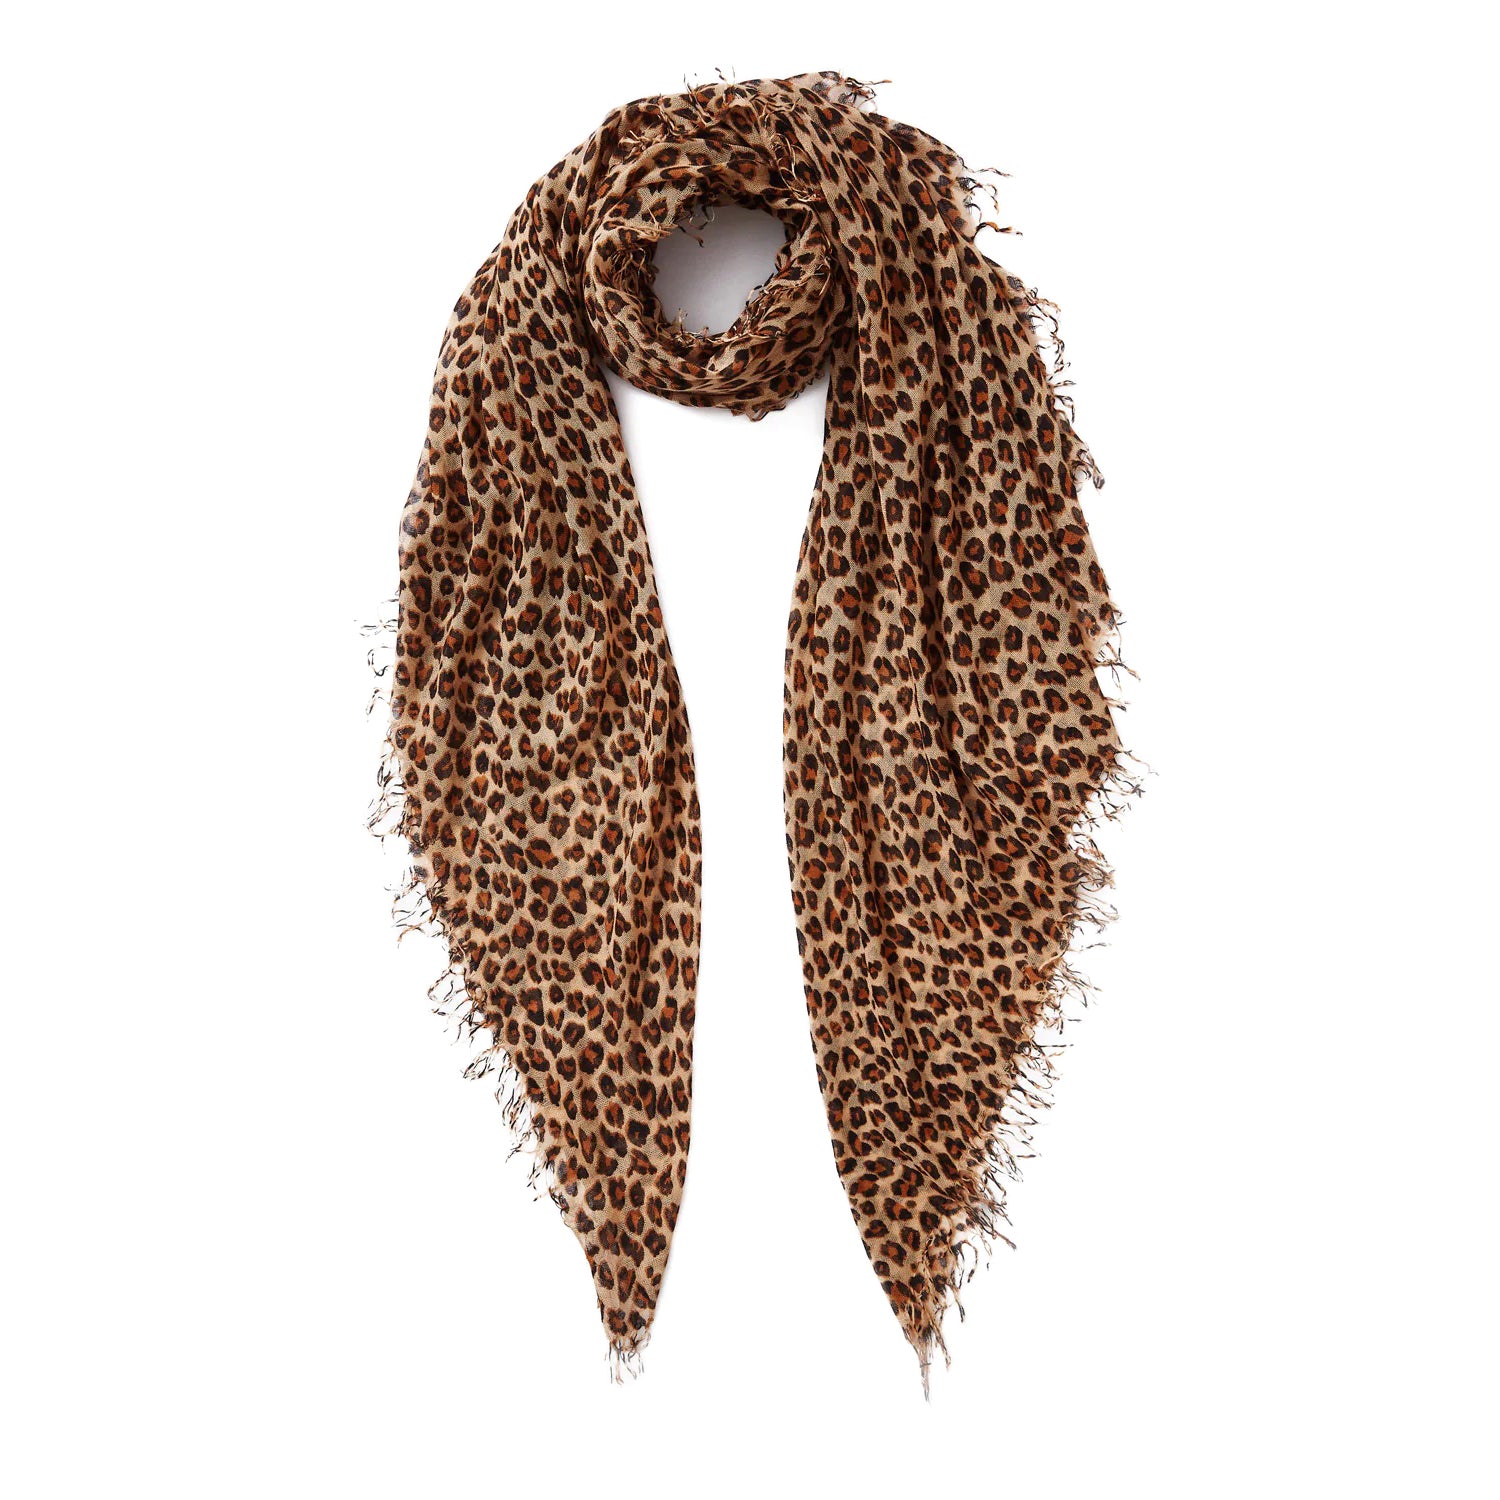 Silk/Cashmere Scarf - Roasted Pecan Leopard